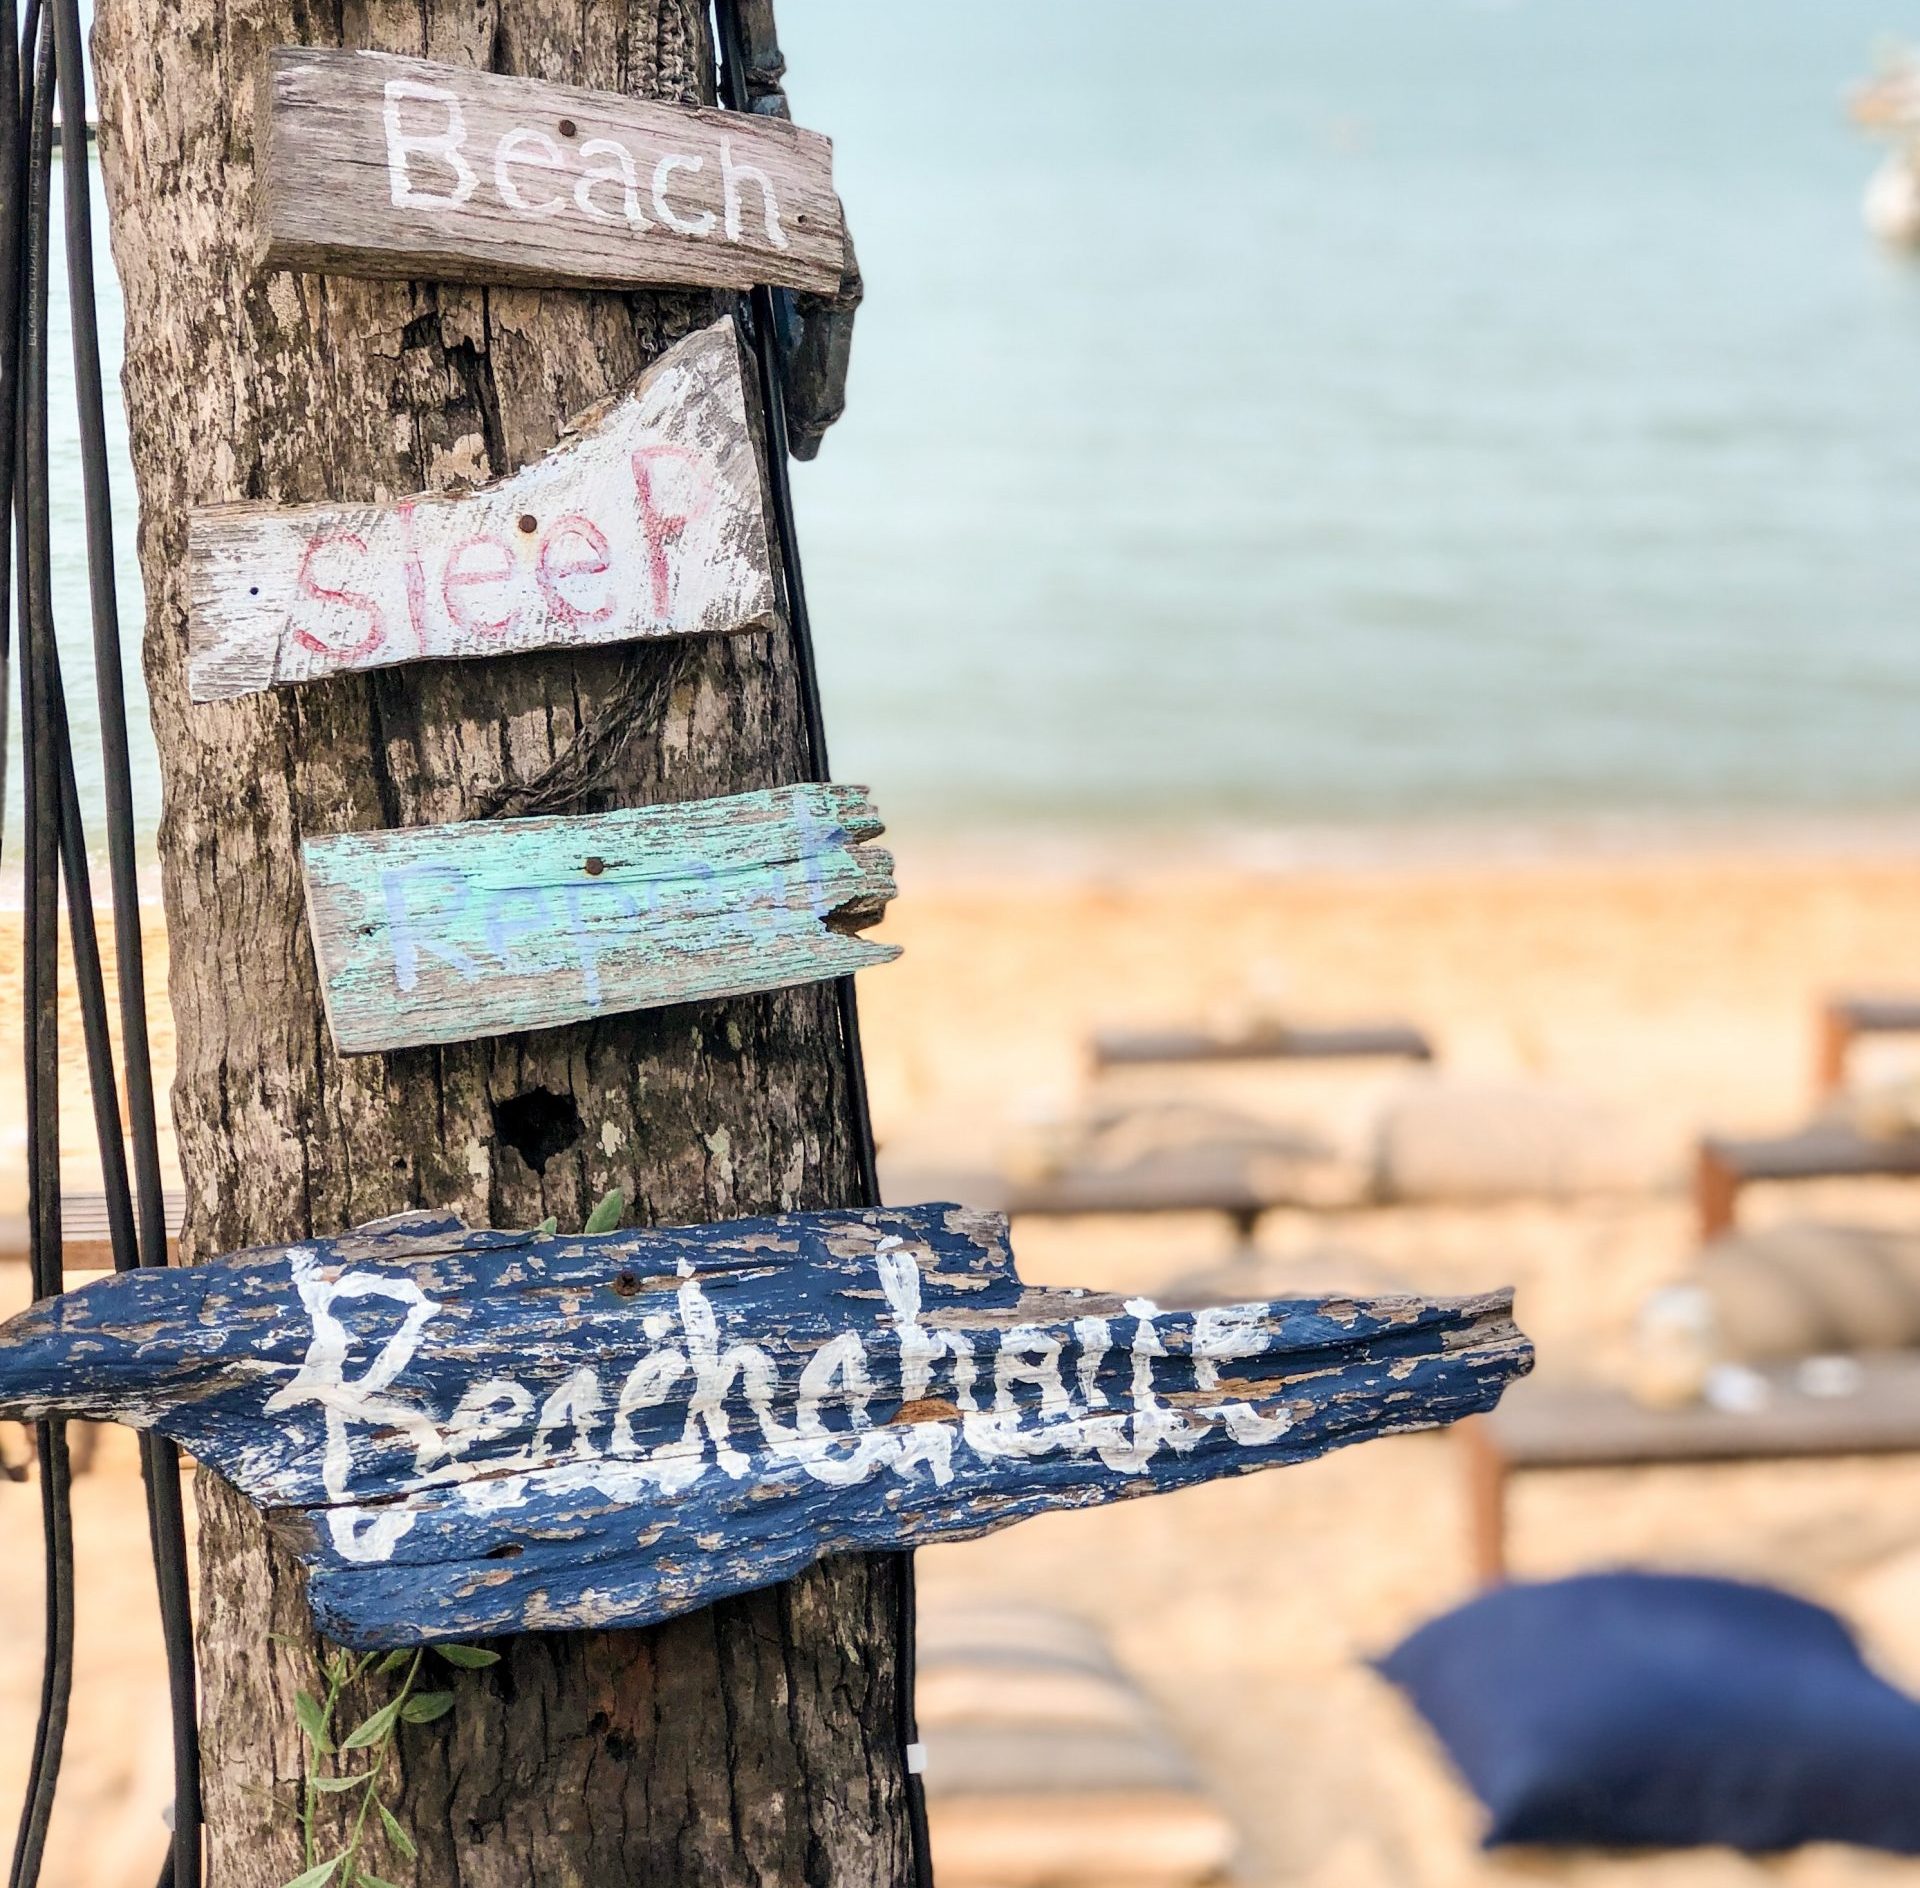 Tag på stranden med de lokale: Undgå de mange udenlandske turister og tag i stedet på stranden med lokale malageños